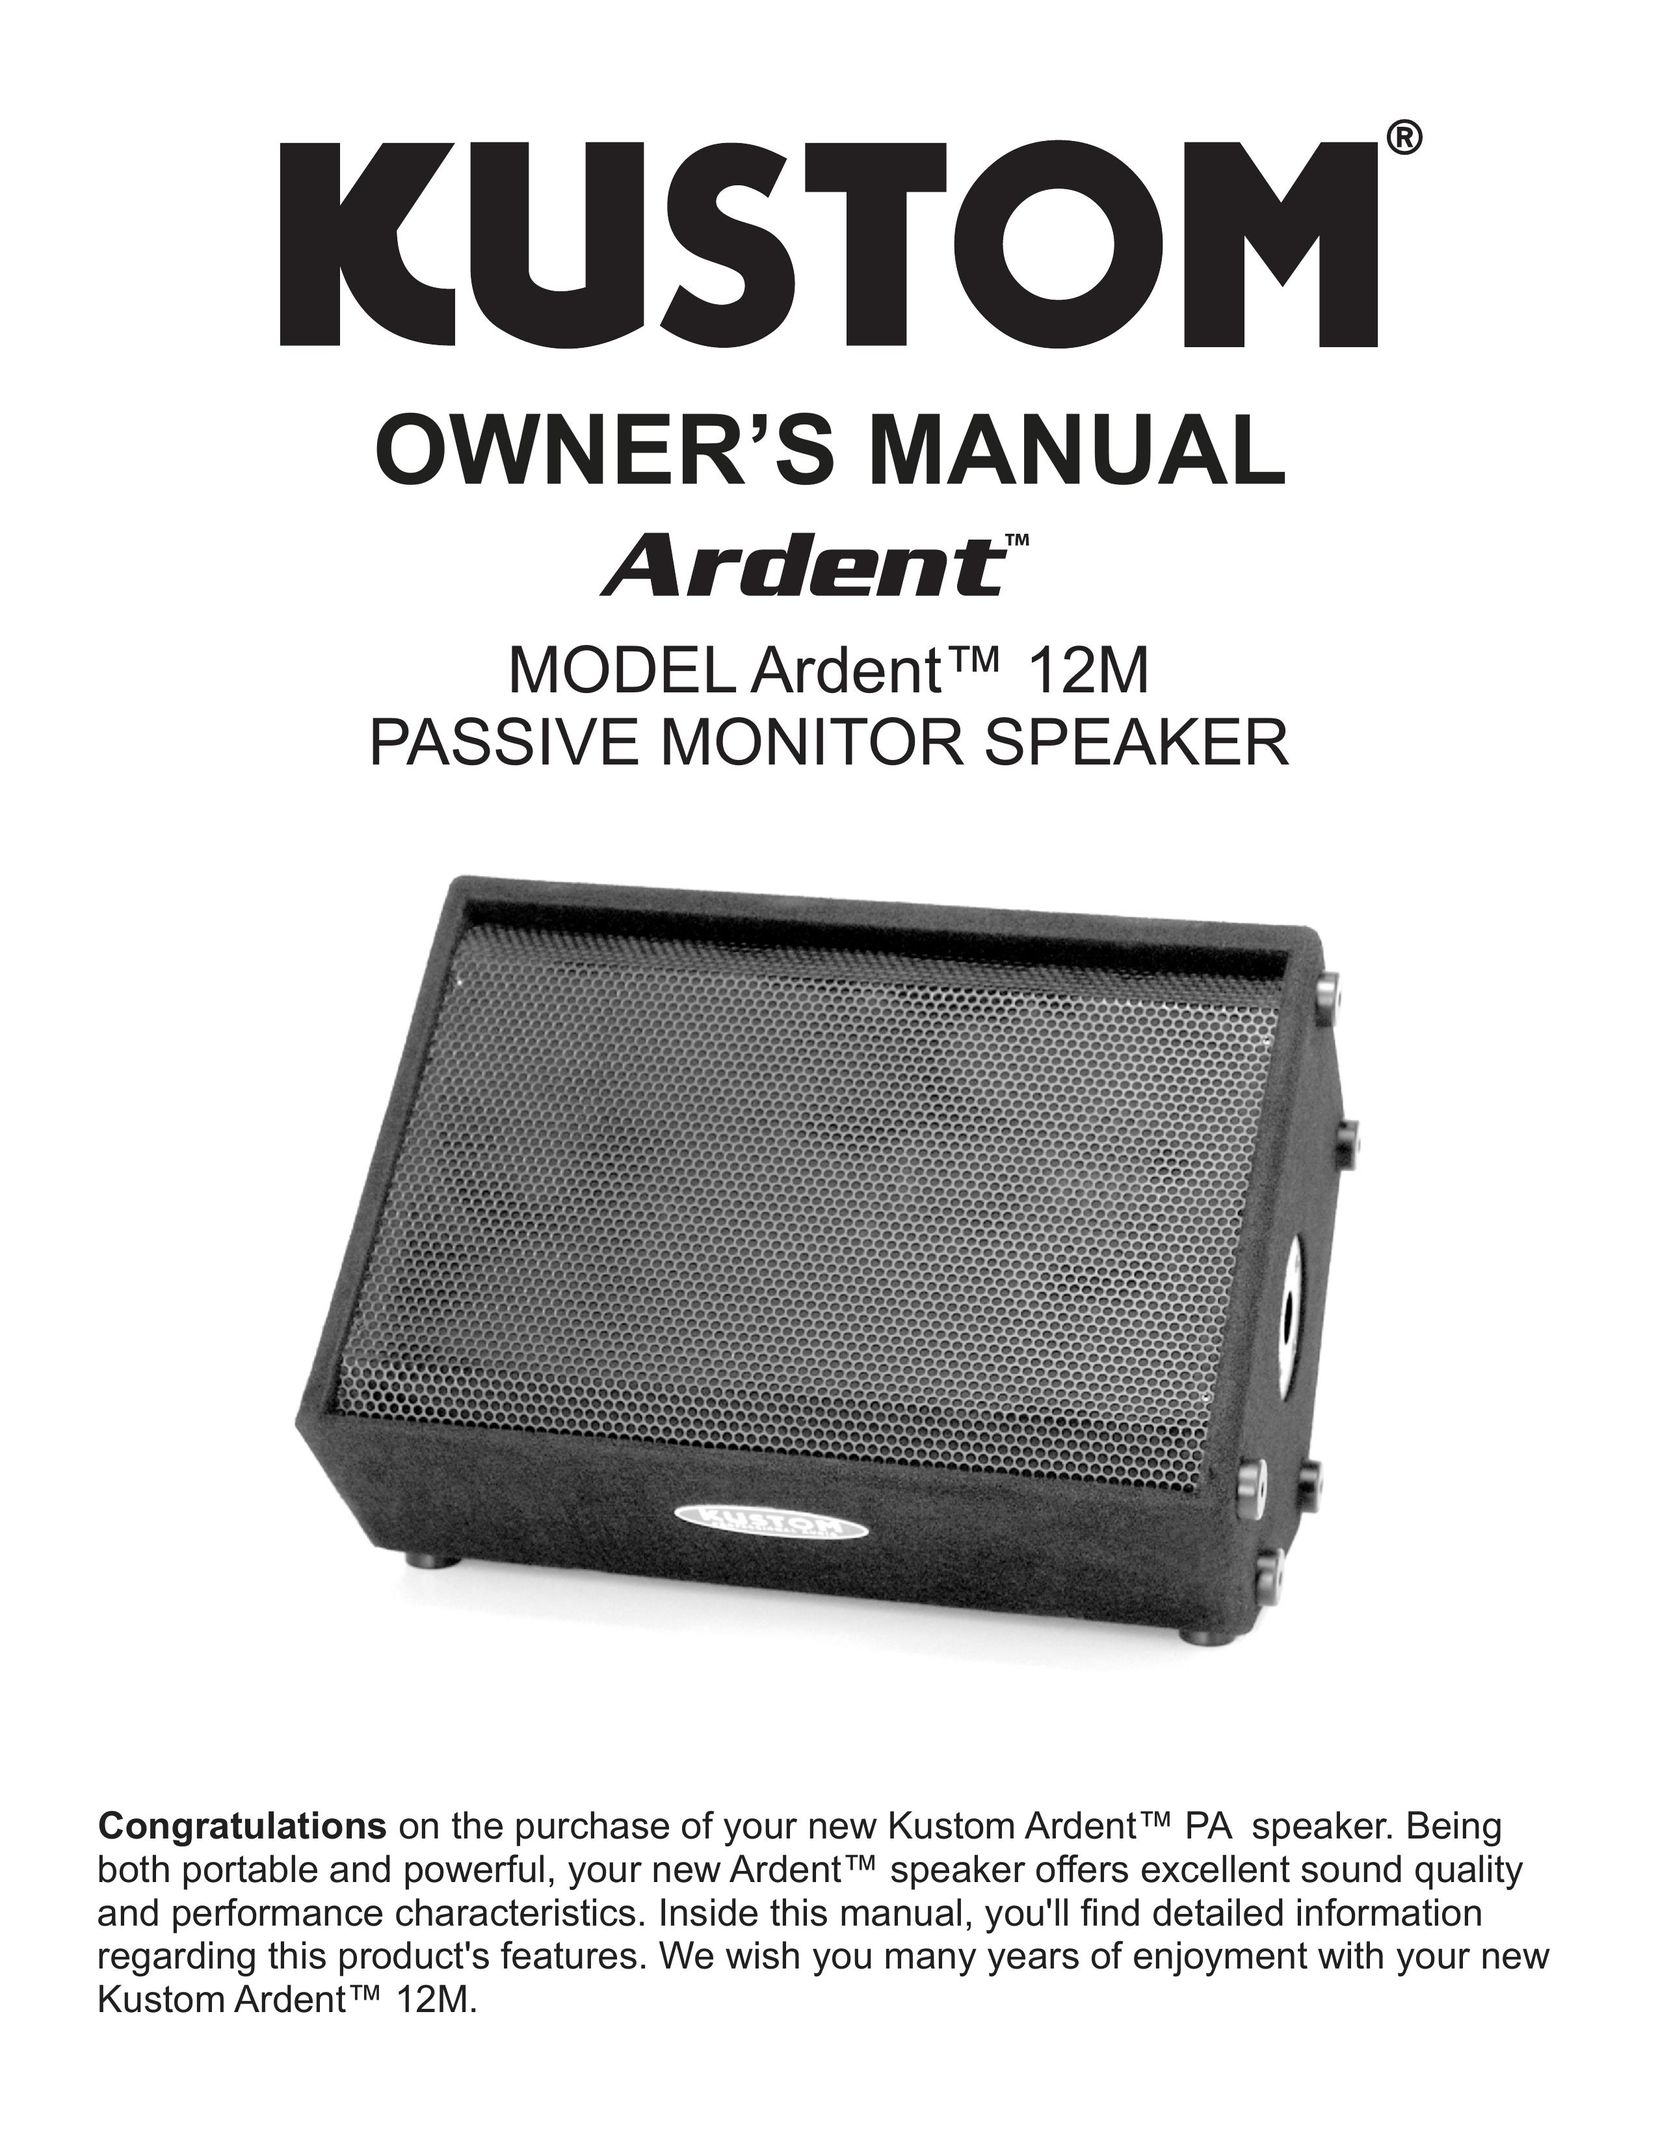 Kustom Ardent 12M Portable Speaker User Manual